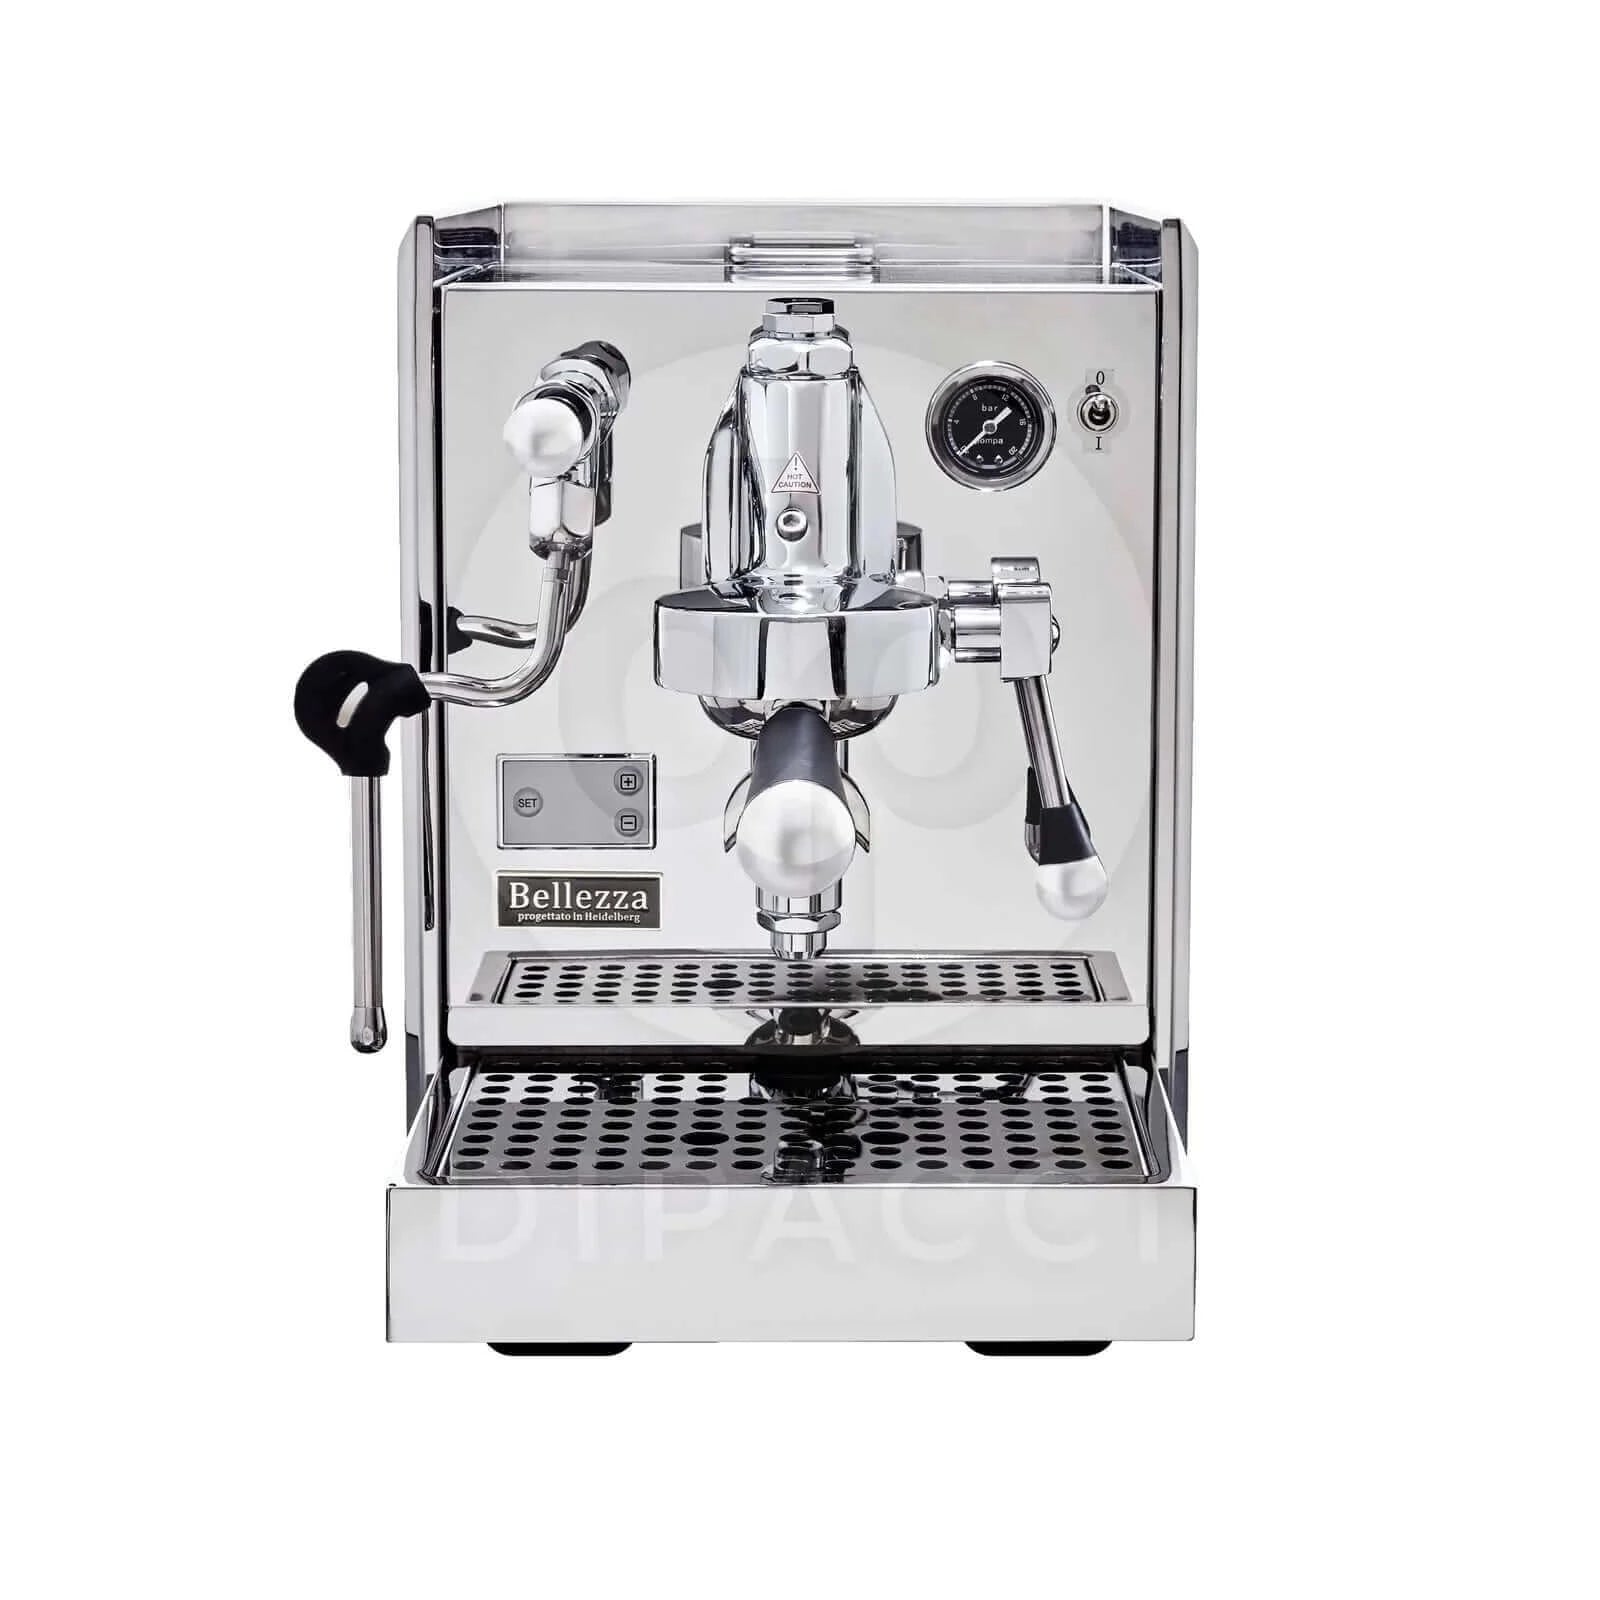 <img src=“Bellezza Espresso Chiara Coffee Machine.png” alt=“Bellezza Espresso Chiara Coffee Machine”>